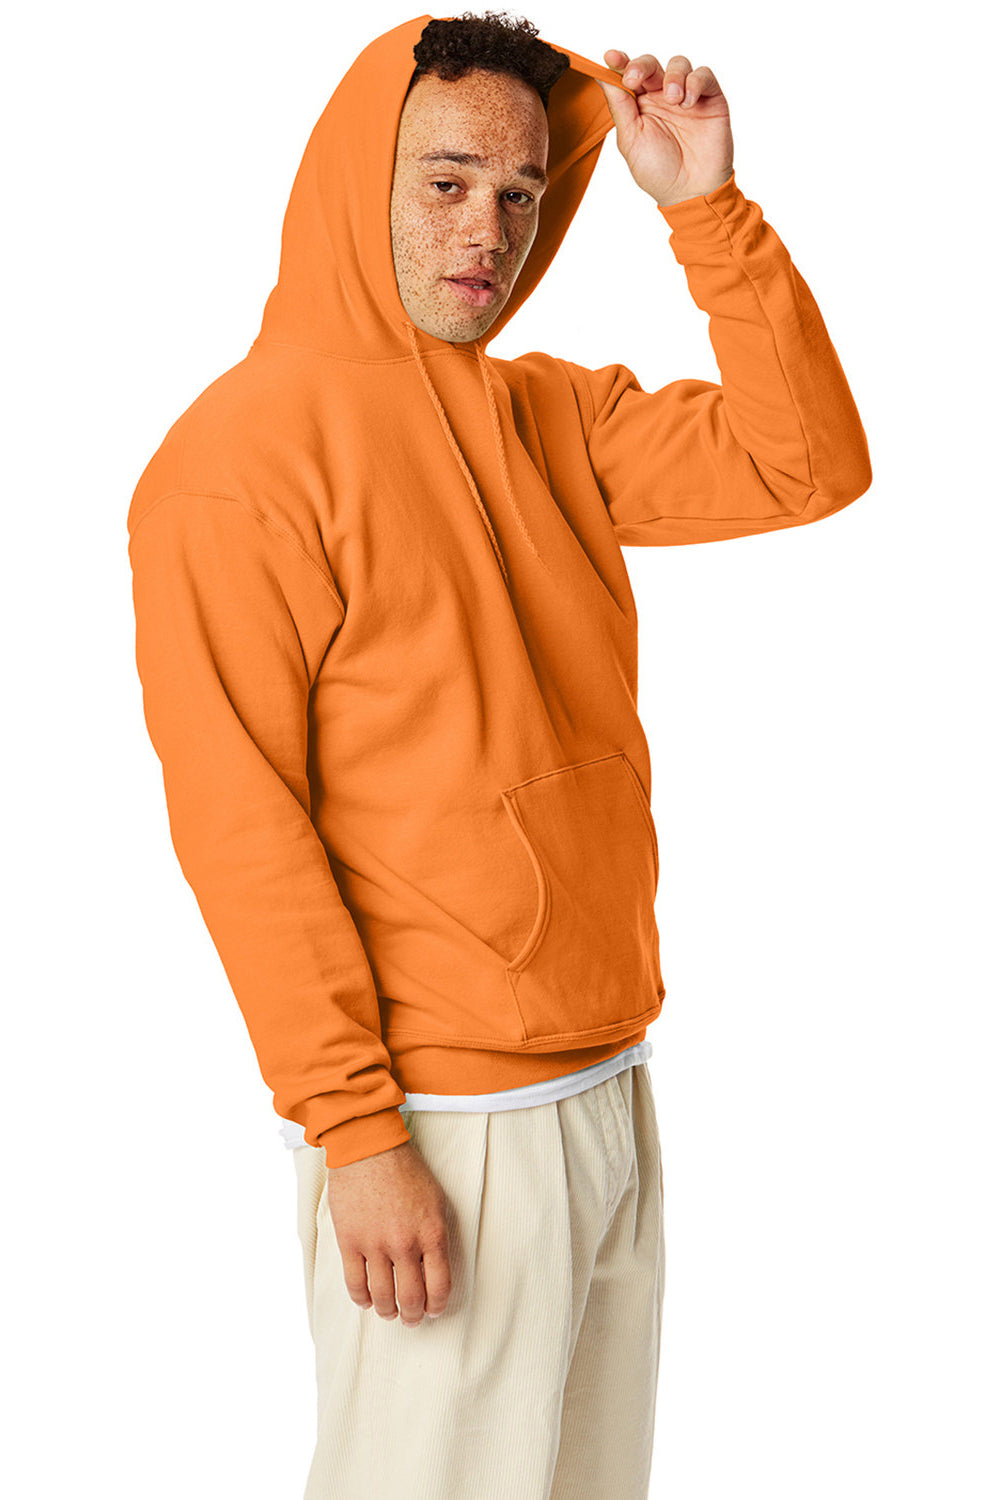 Hanes P170 Mens EcoSmart Print Pro XP Hooded Sweatshirt Hoodie Tennessee Orange SIde